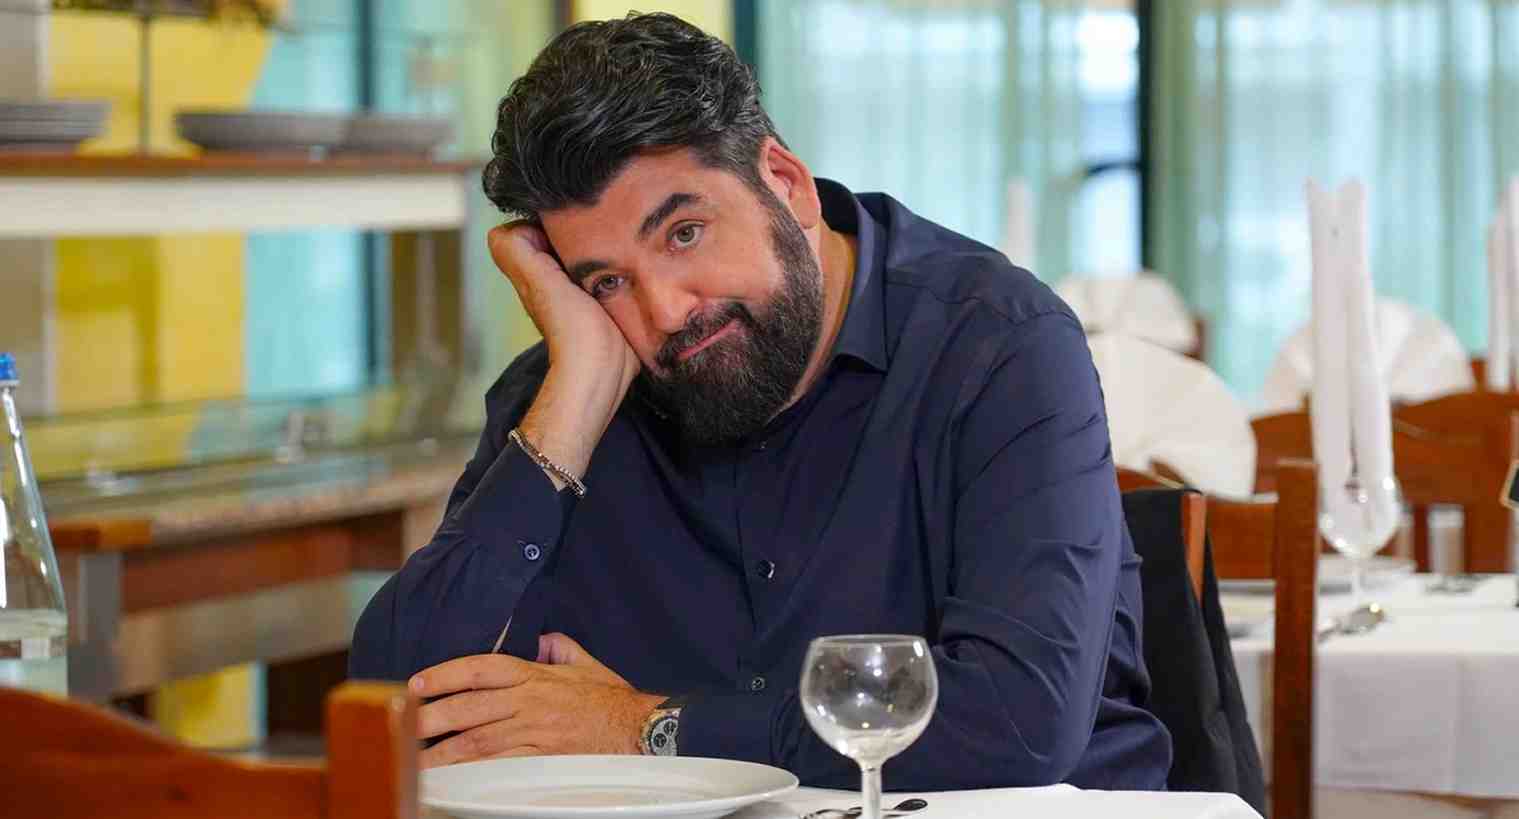 Cucine da Incubo: Antonino Cannavacciuolo salva Ristoranti in crisi su Sky Uno e NOW